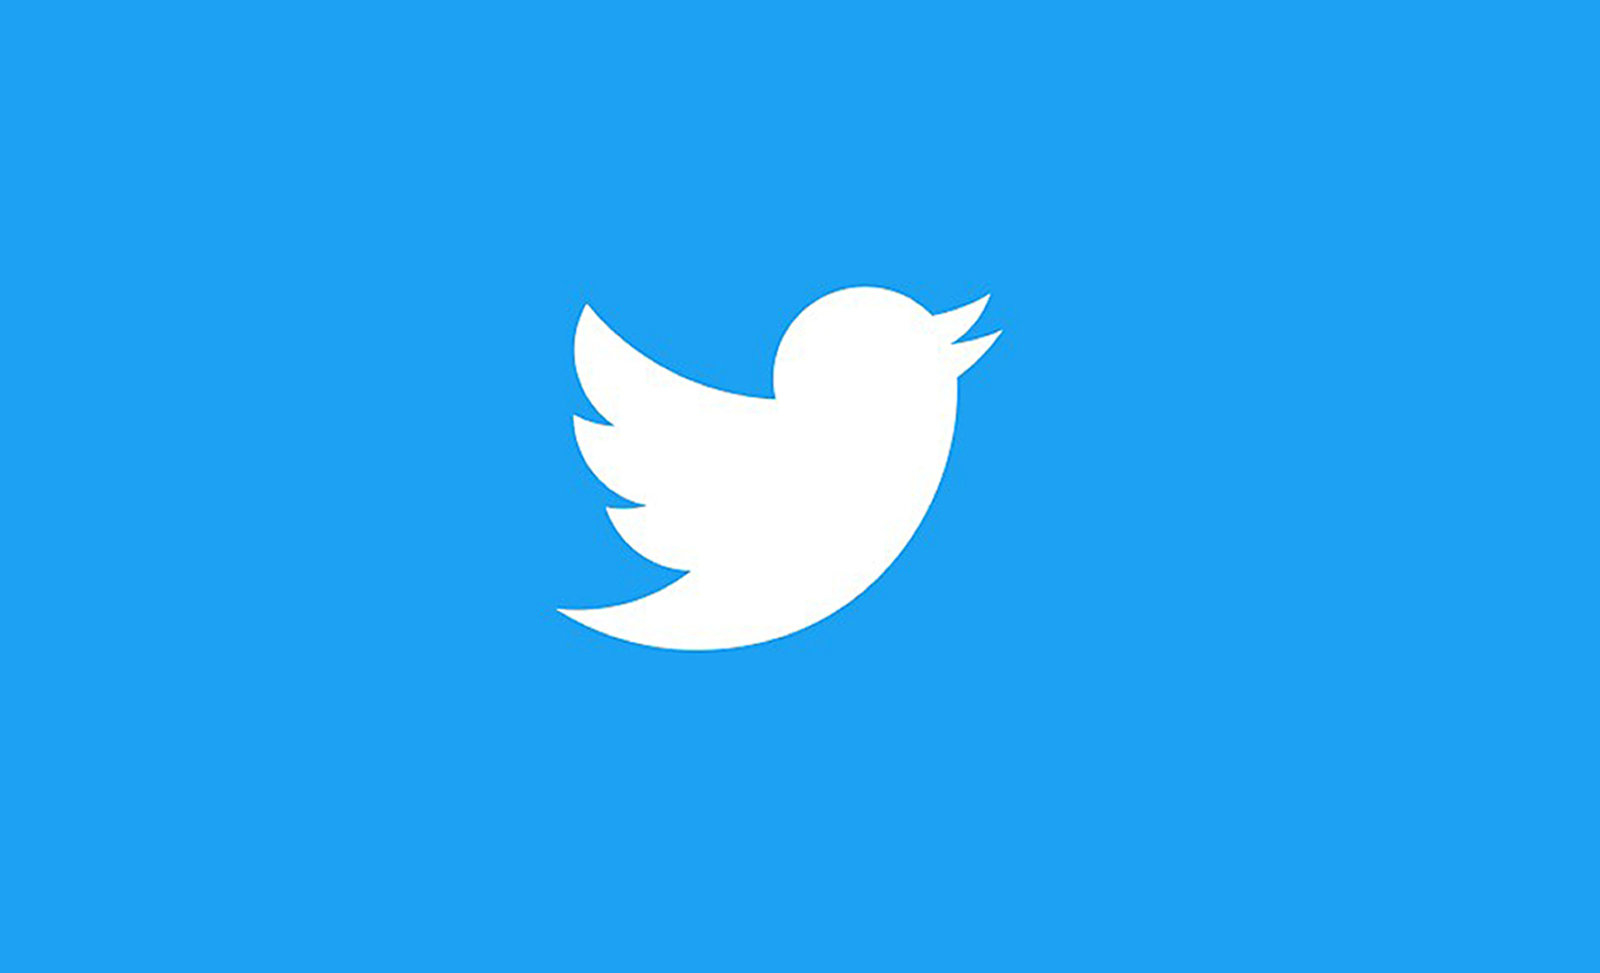 تويتر تخطط لإطلاق منصة اشتراكات مدفوعة على شبكتها الاجتماعية (تقرير)